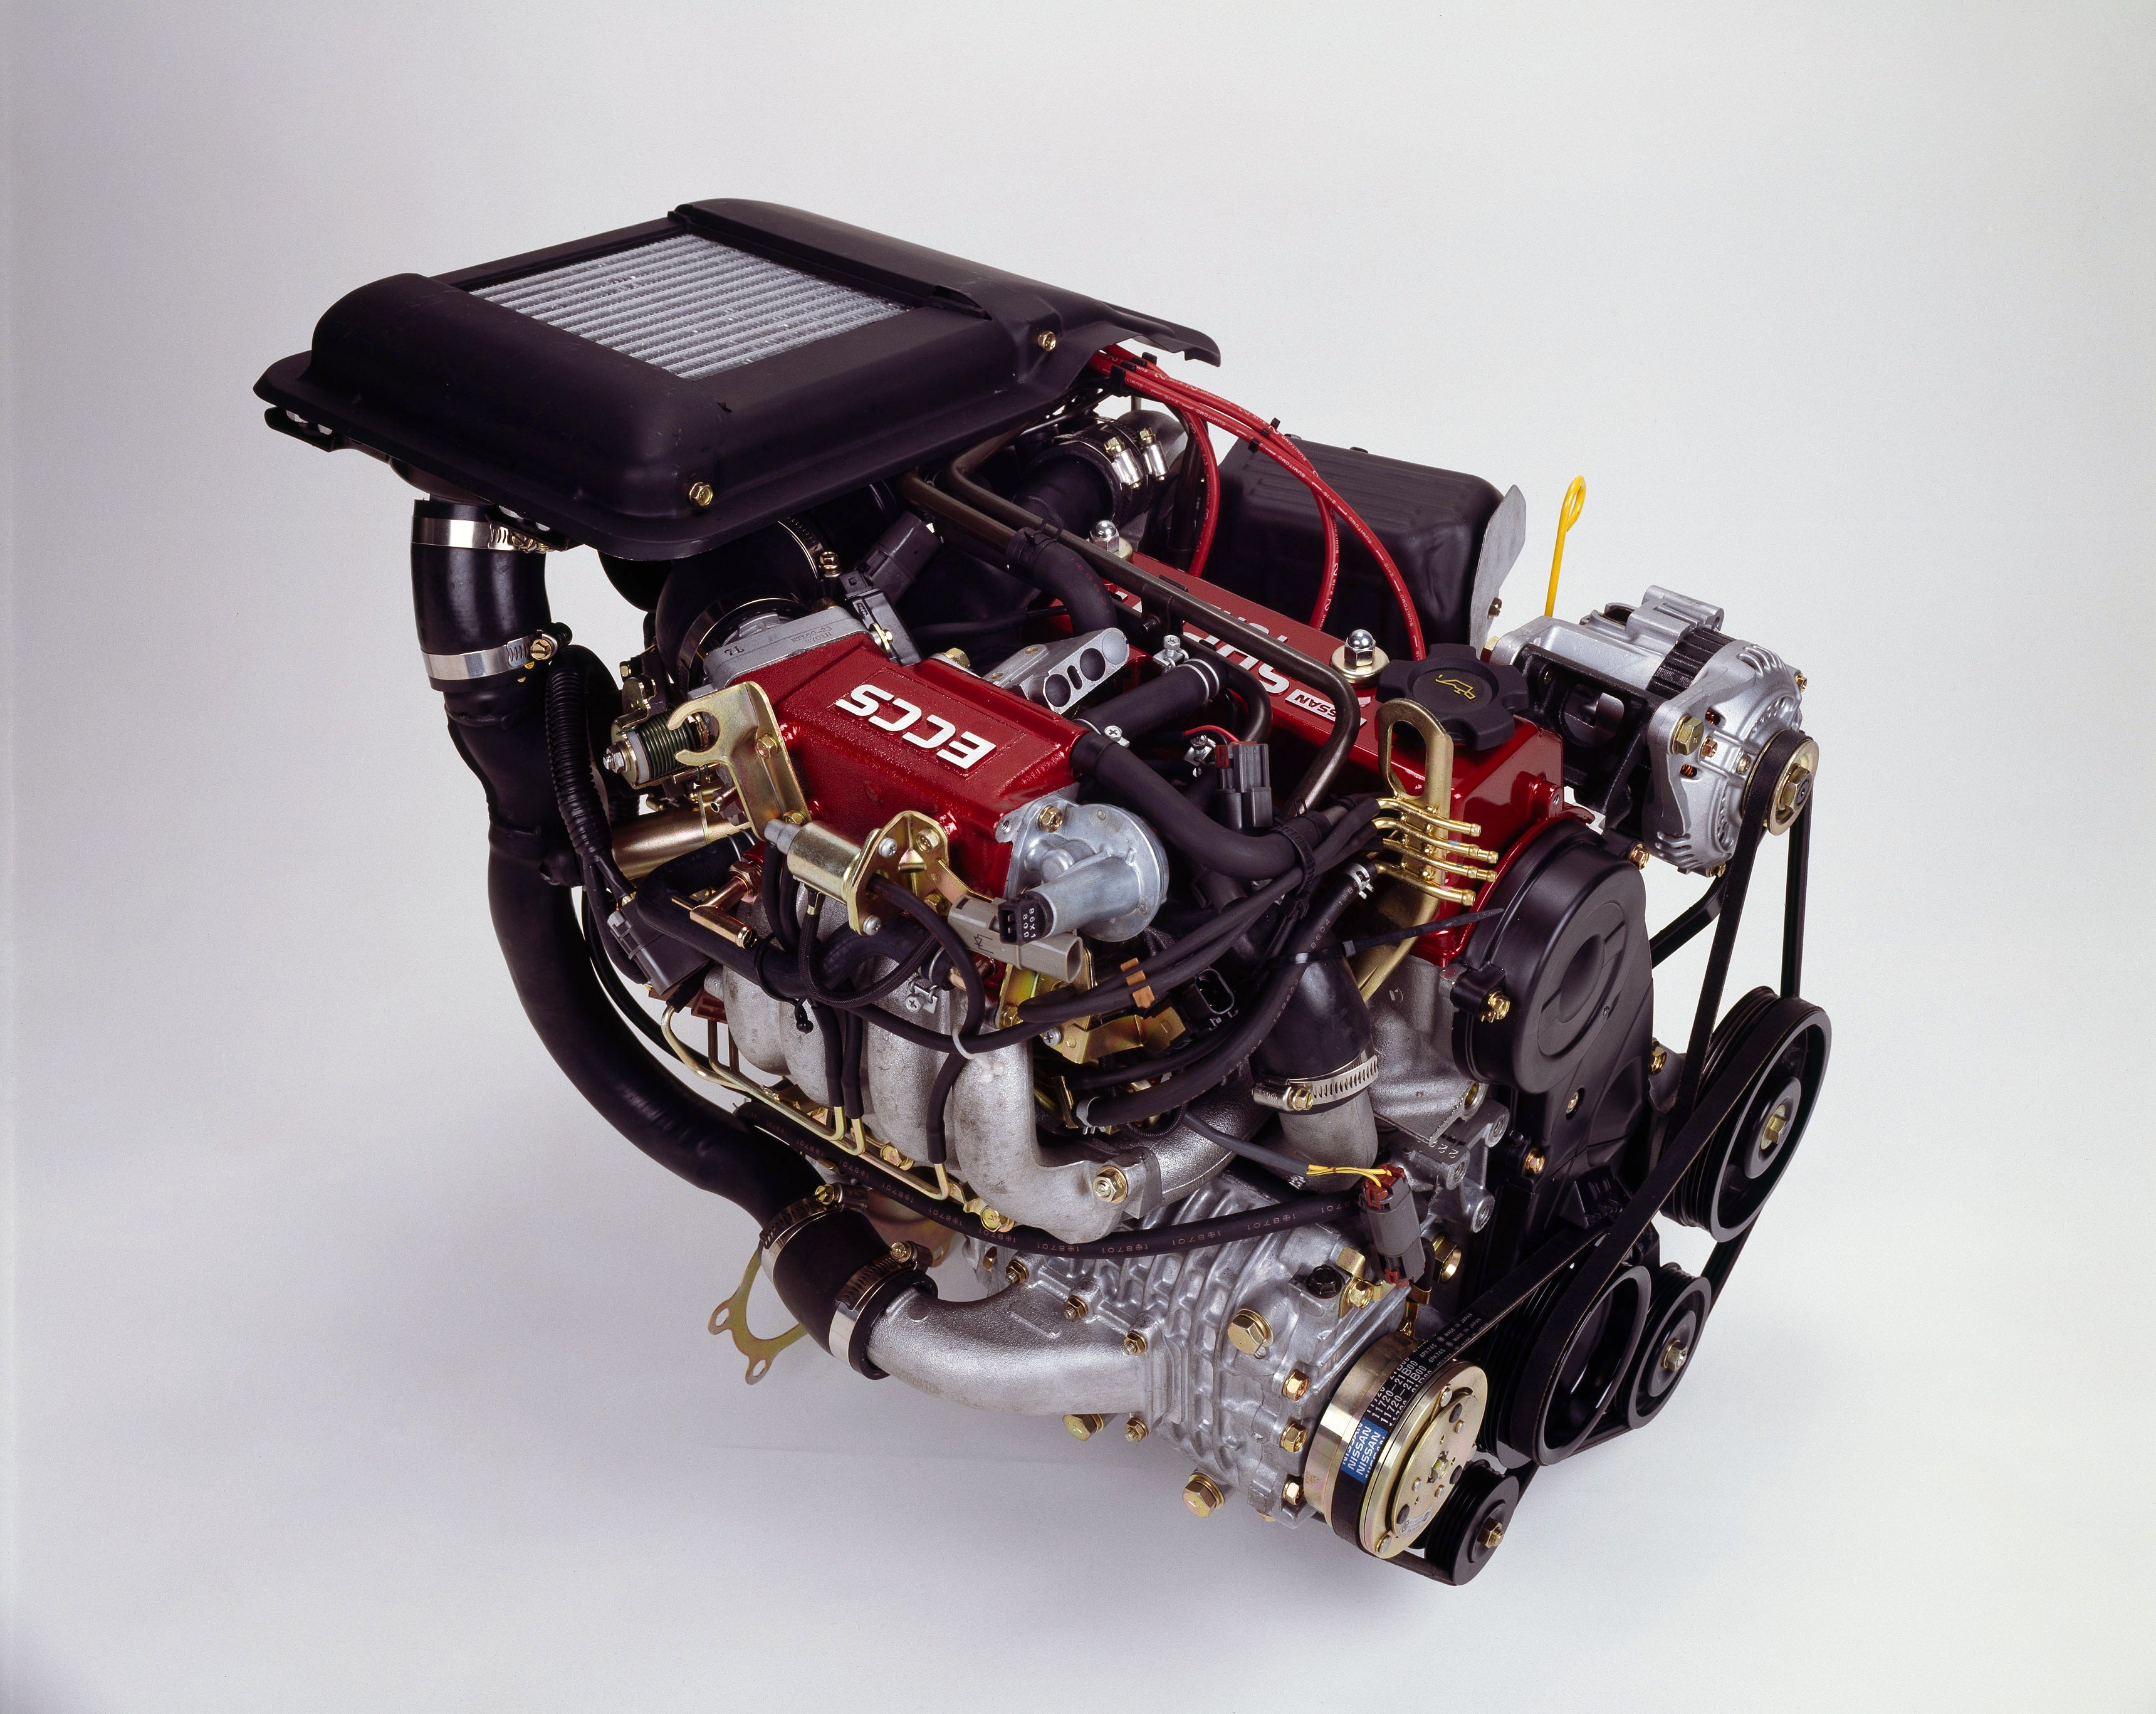 1988年にラリーベース車として発売した「マーチR」に搭載し、全日本ラリー選手権で高性能を実証した日本初のスーパーターボ（スーパーチャージャー+ターボチャージャー）エンジン、PLASMA-MA09ERT